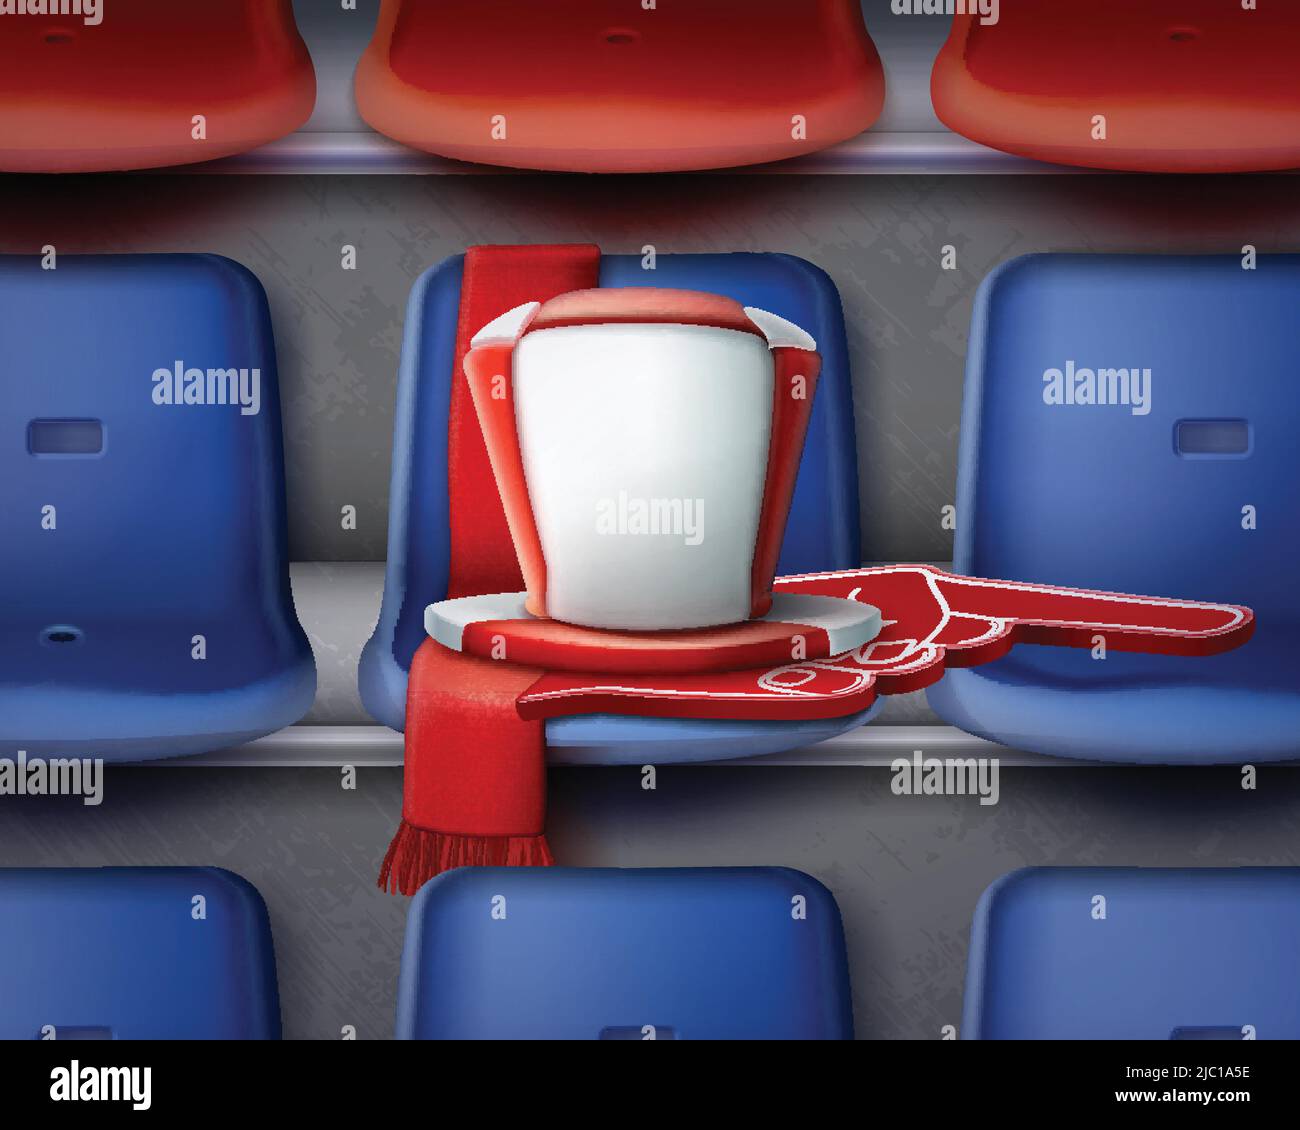 Illustrazione vettoriale delle sedie di plastica rossa e blu della fila sulla tribuna con attributi di ventilatore Illustrazione Vettoriale